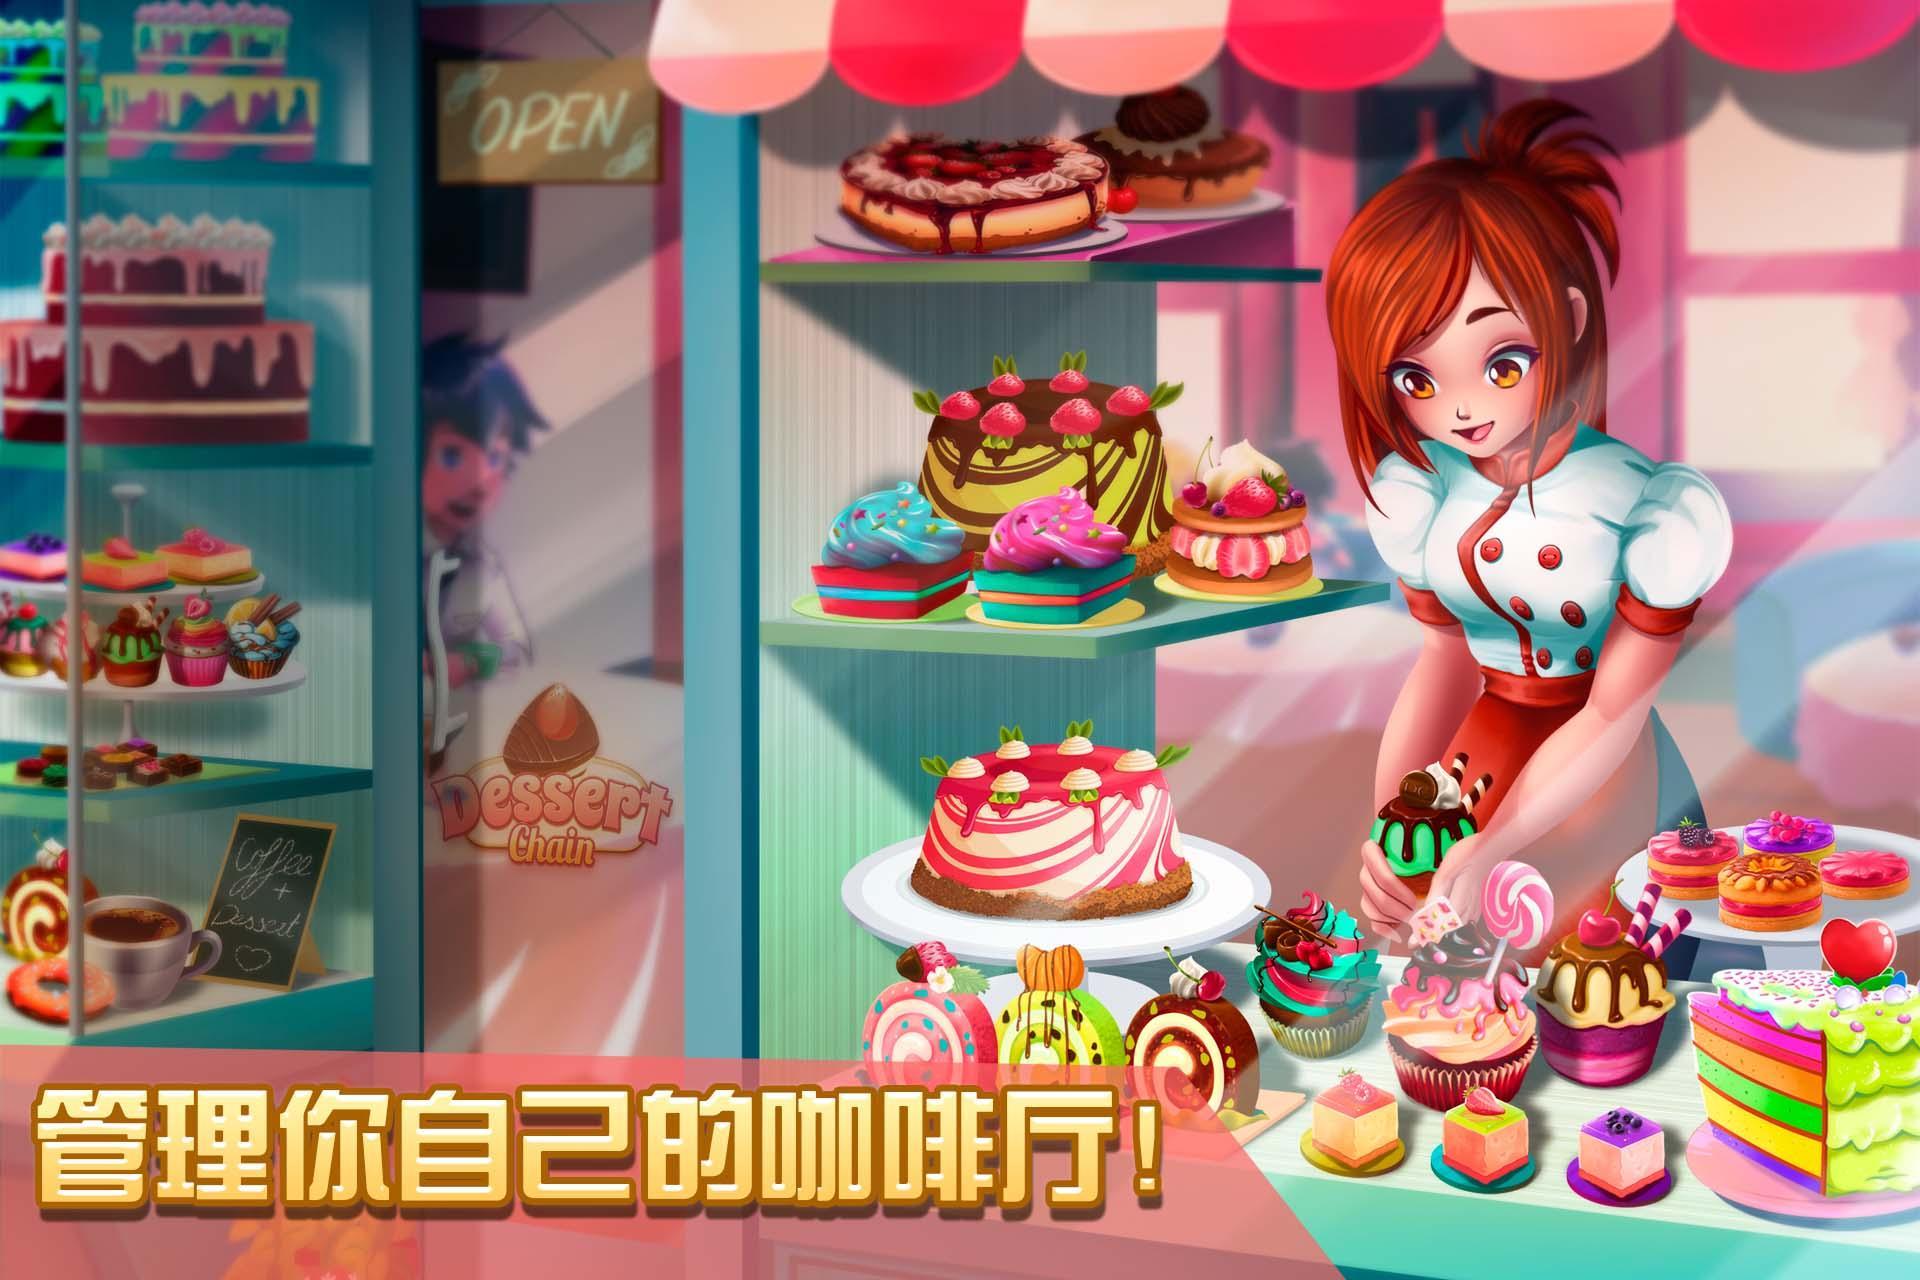 Screenshot 1 of Dessert Chain: Café Waitress at 0.8.29